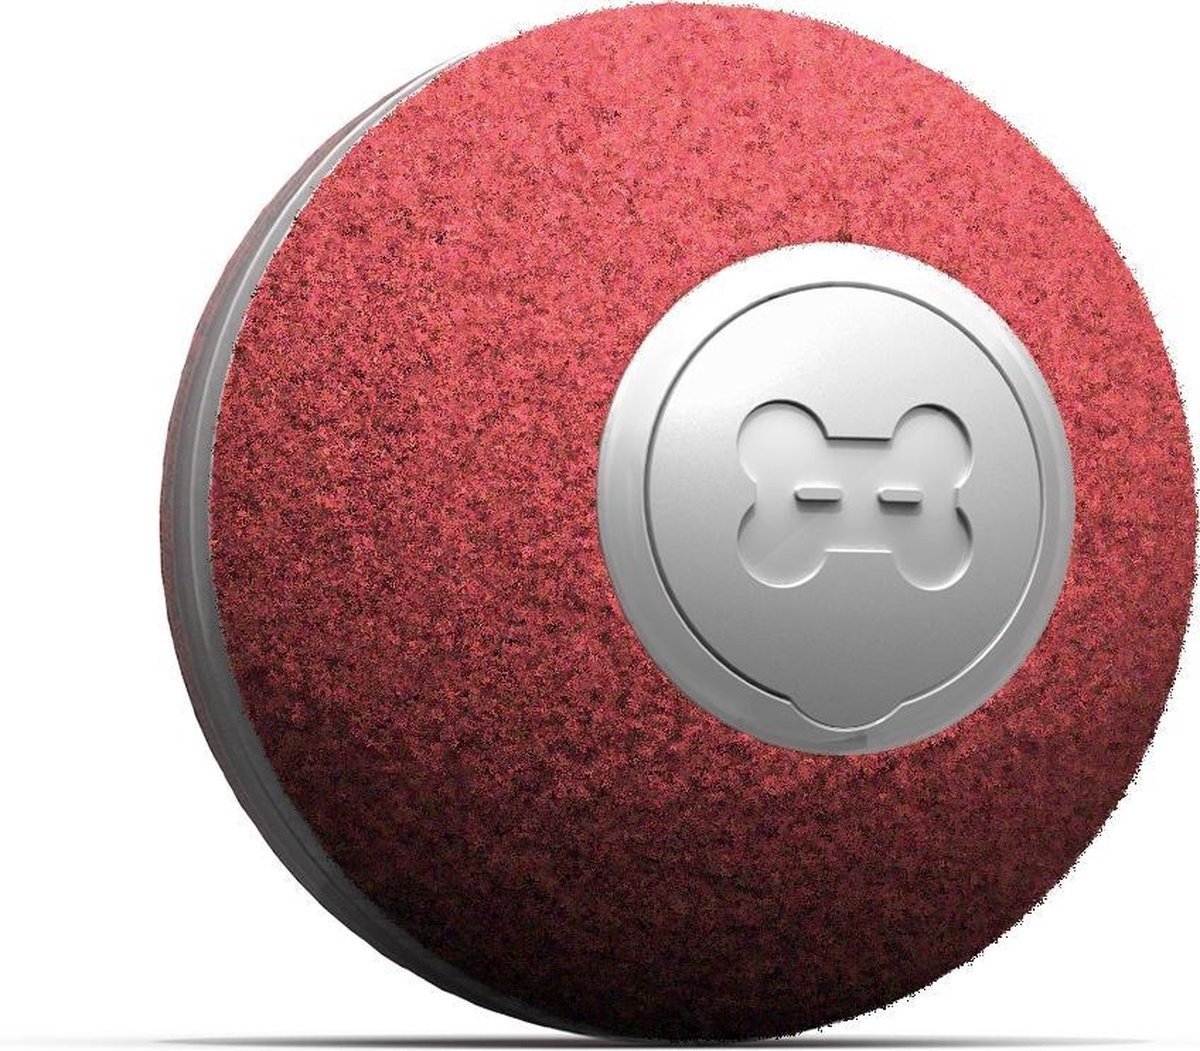 USB auf günstig Kaufen-Cheerble mini ball 2.0 - Intelligenter interaktiver selbstrollender Ball für Katzen - 3 Spielmodi - Katzenspielzeug - USB aufladbar - Rot. Cheerble mini ball 2.0 - Intelligenter interaktiver selbstrollender Ball für Katzen - 3 Spielmodi - Katzen